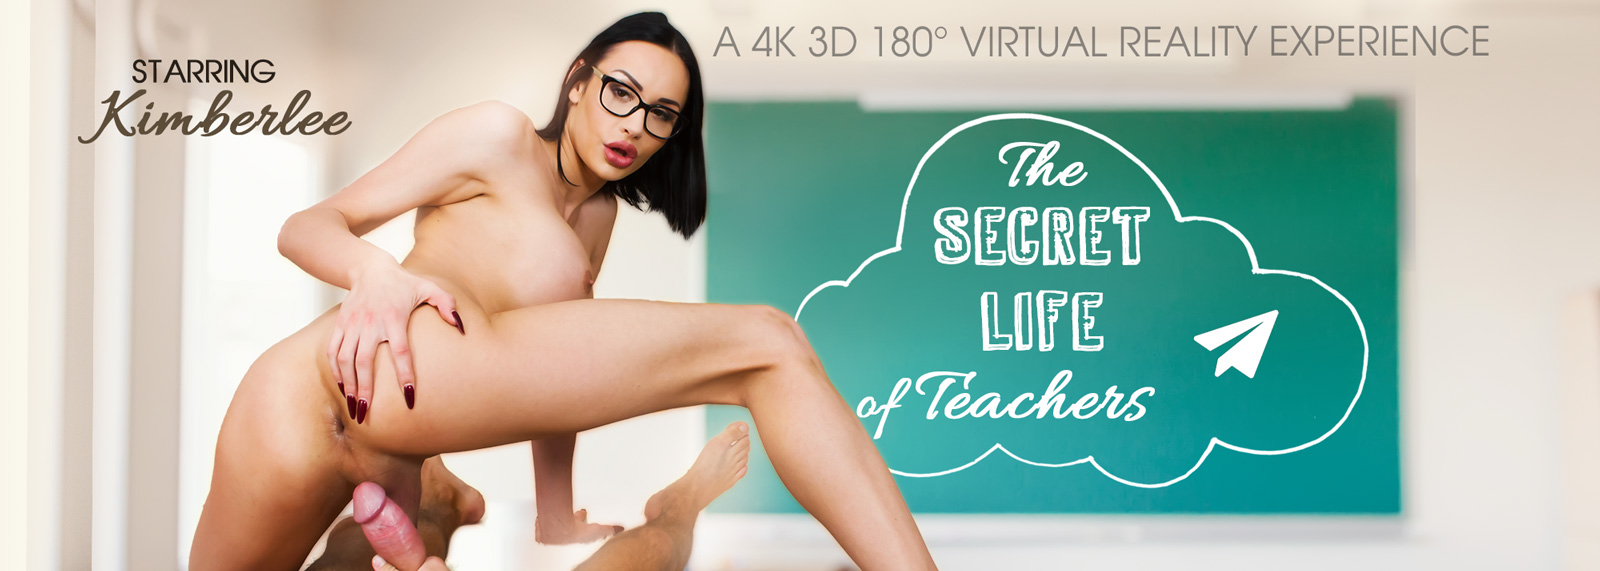 The Secret Life of Teachers - VR Porn Video, Starring: Kimber Lee VR